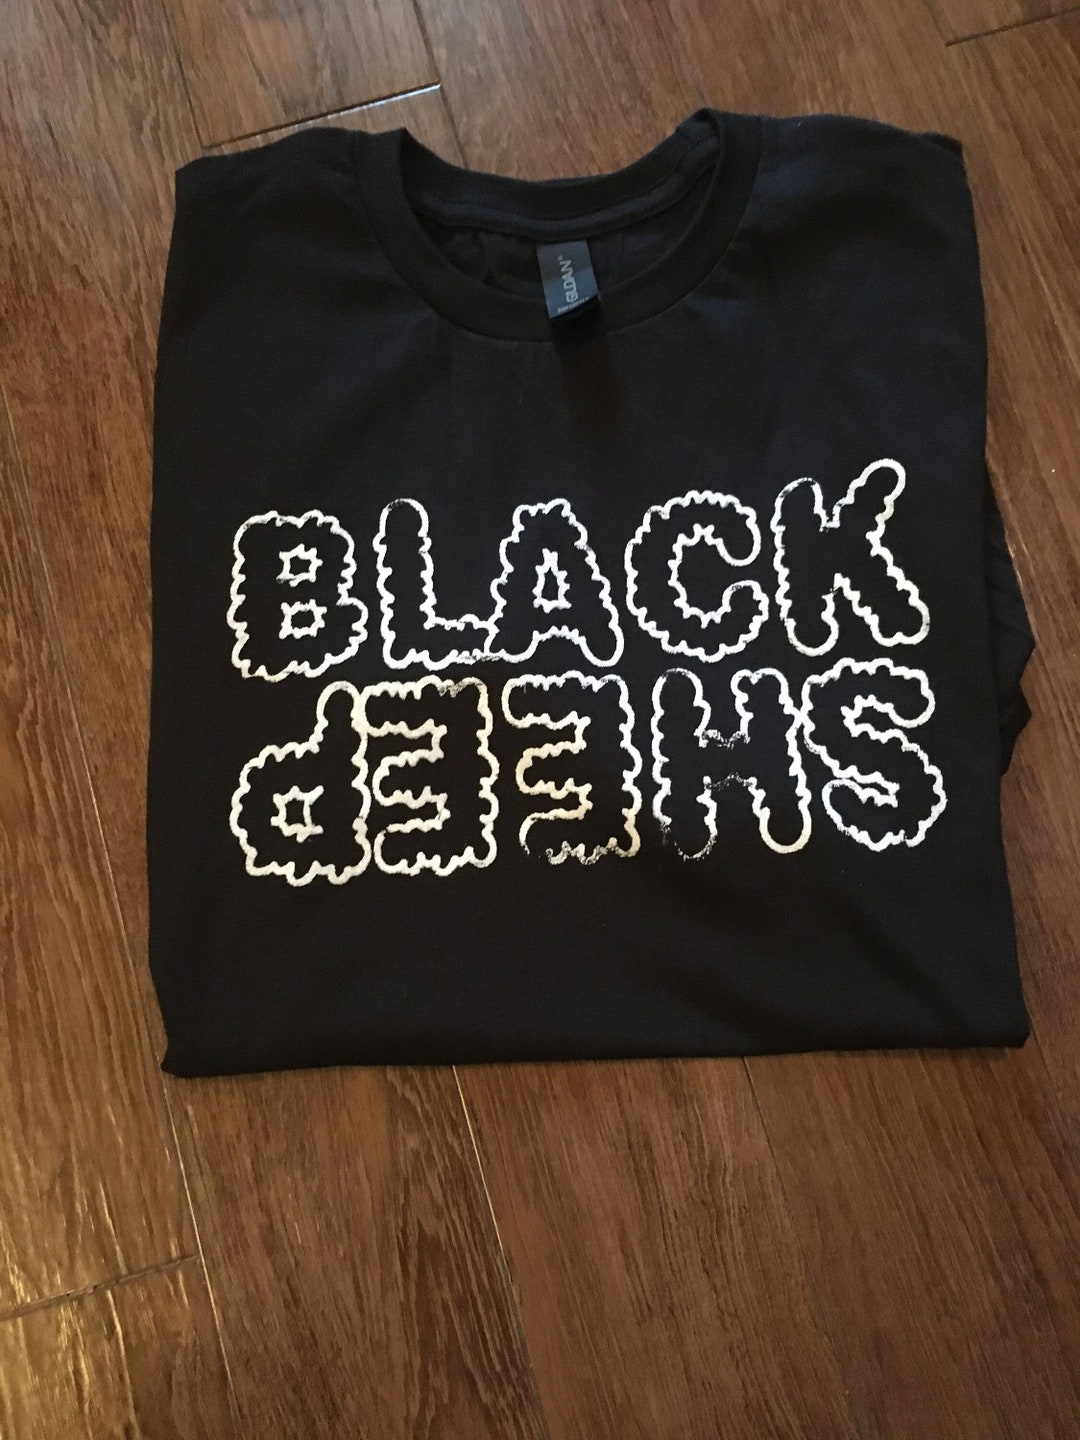 Black Sheep T-shirt Goth Emo Shirt Mens Womens Plus Size - Etsy